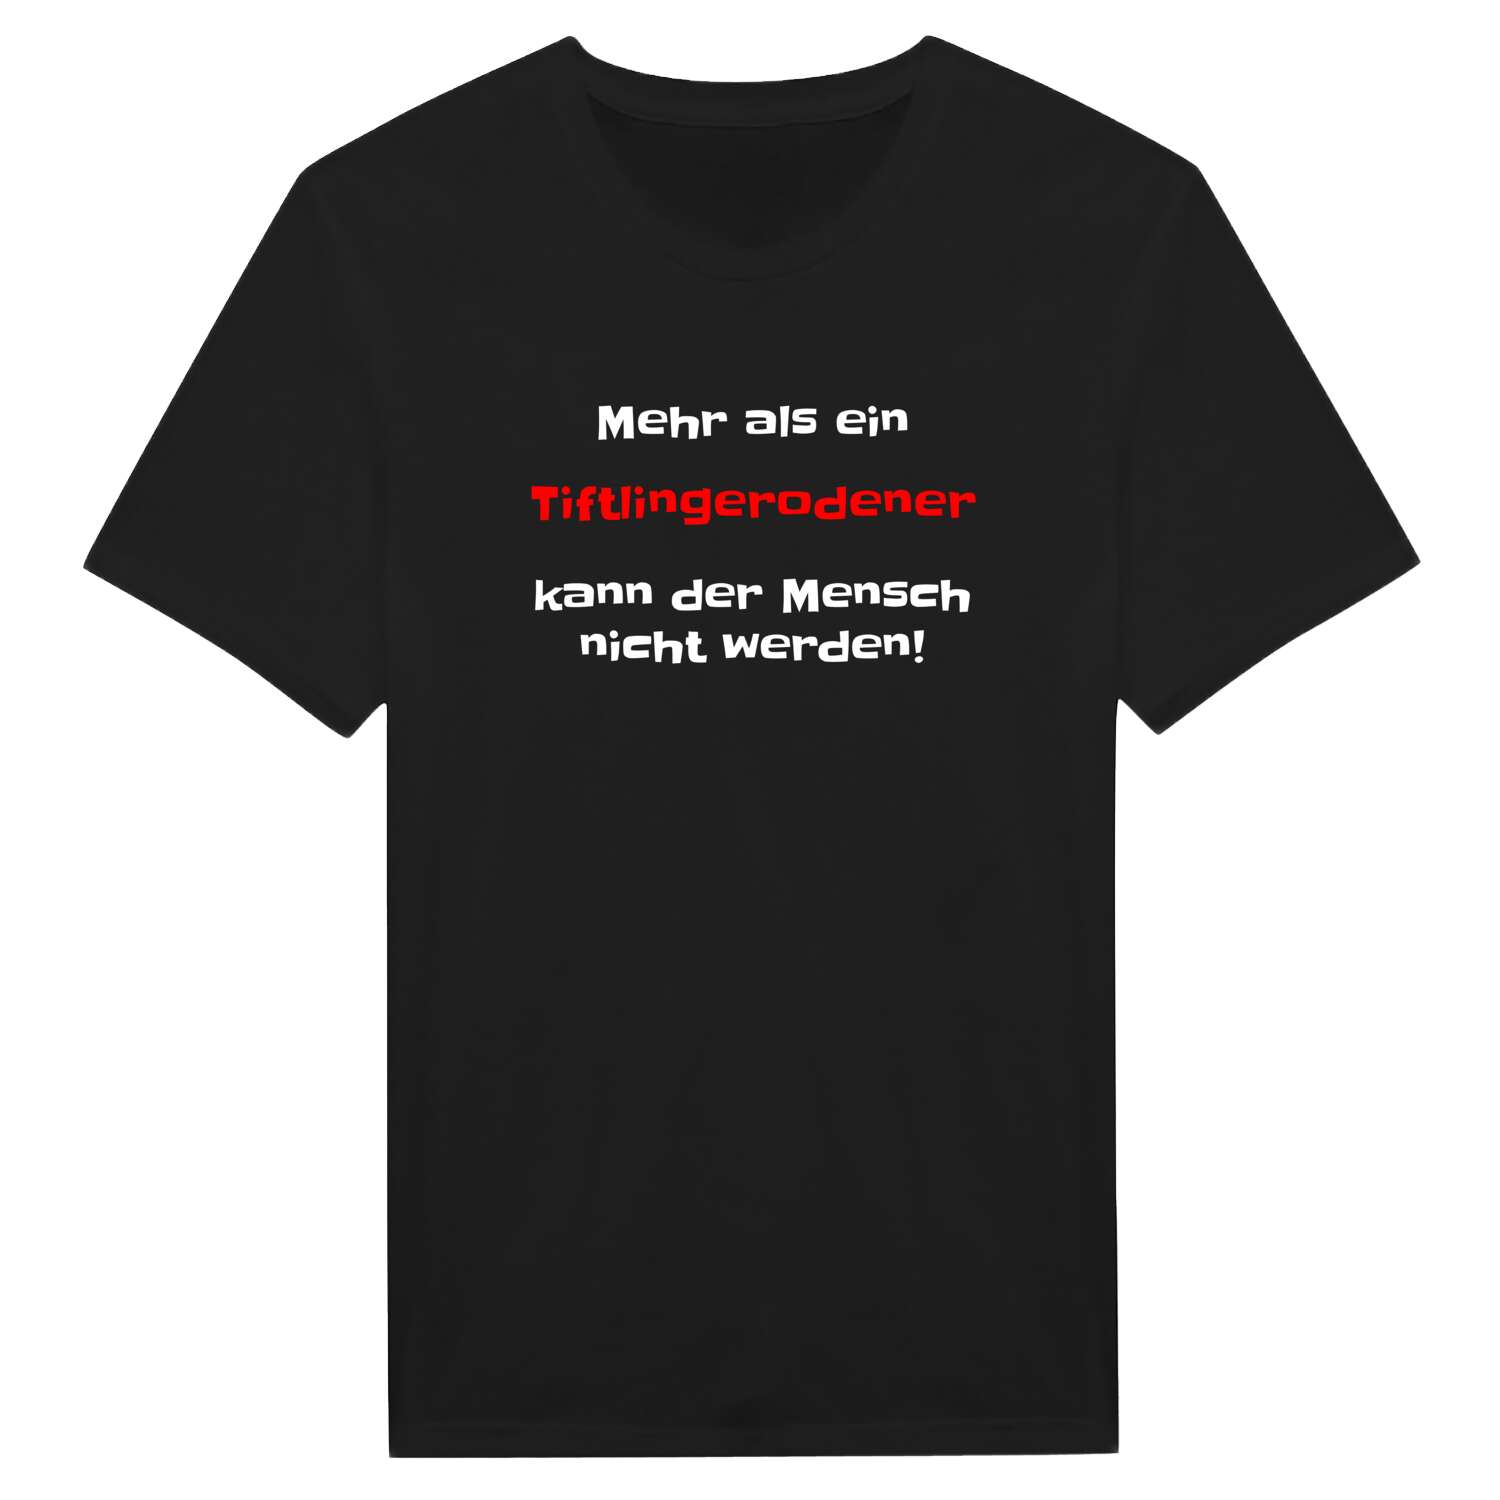 Tiftlingerode T-Shirt »Mehr als ein«